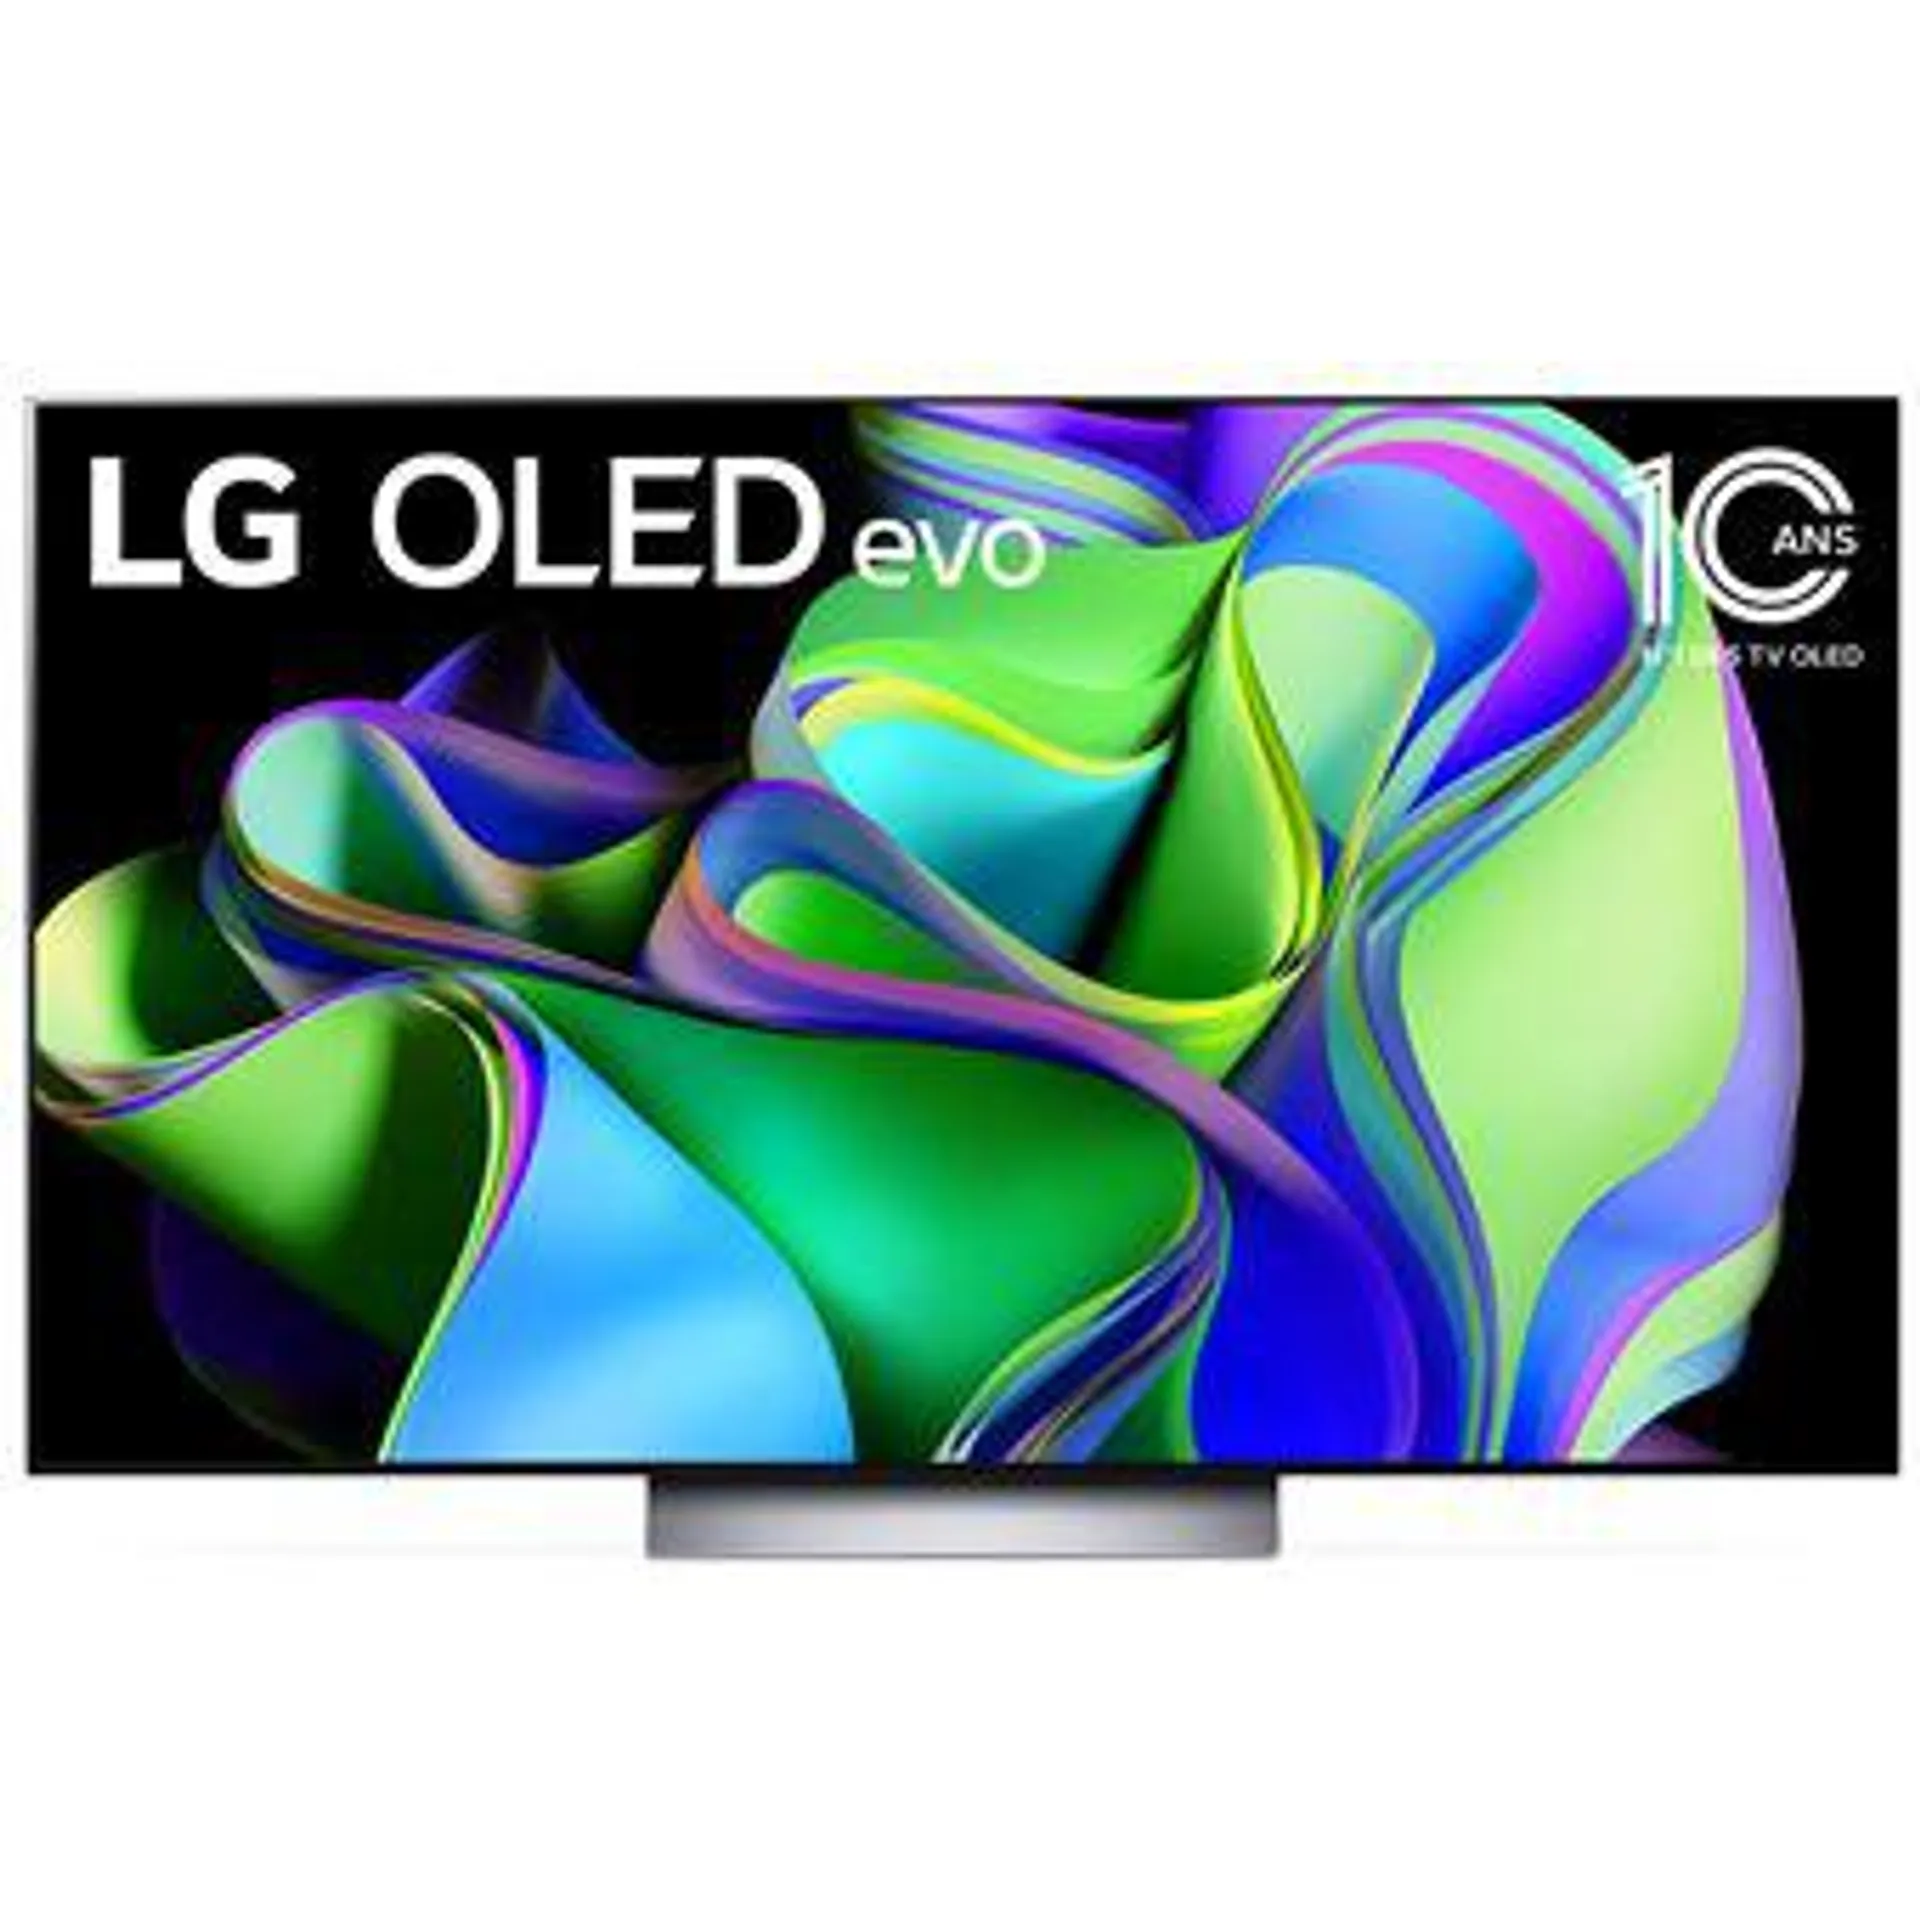 TV OLED Evo LG OLED55C3 139 cm 4K UHD Smart TV Noir et Argent